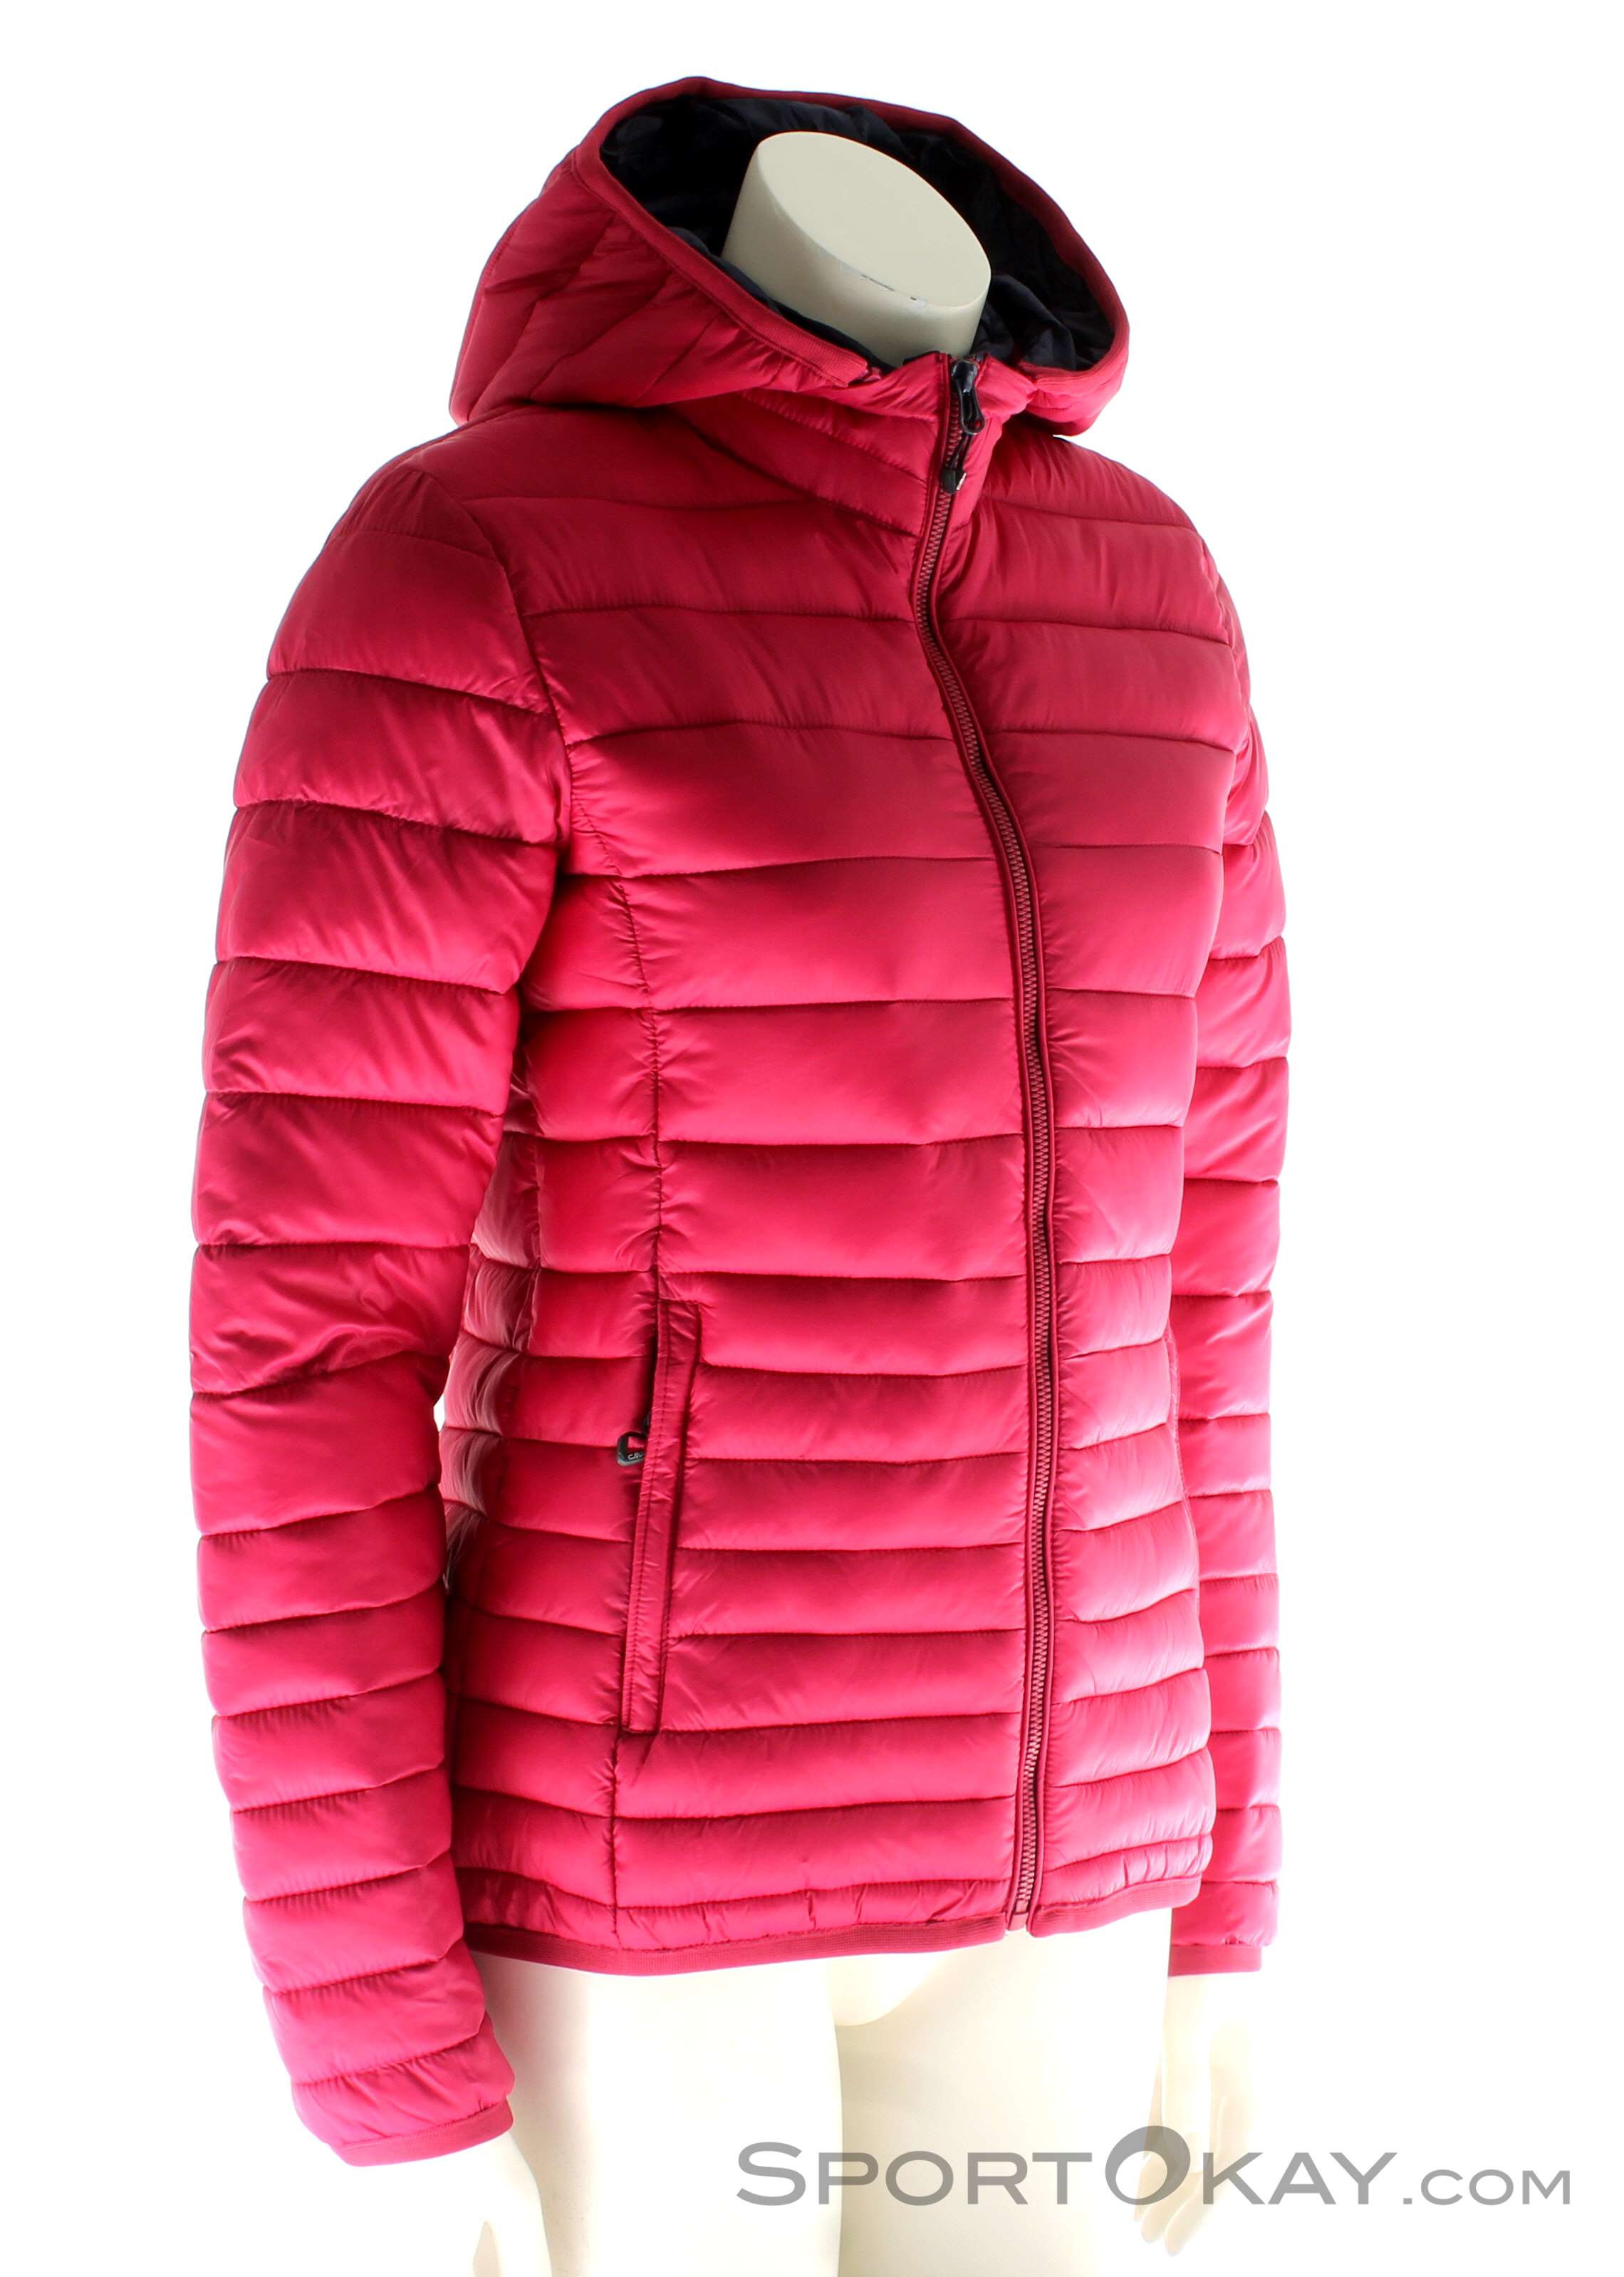 Outdoor Zip Outdoor Womens - Jacket All Jacket Hood - - Clothing Jackets CMP - Outdoor